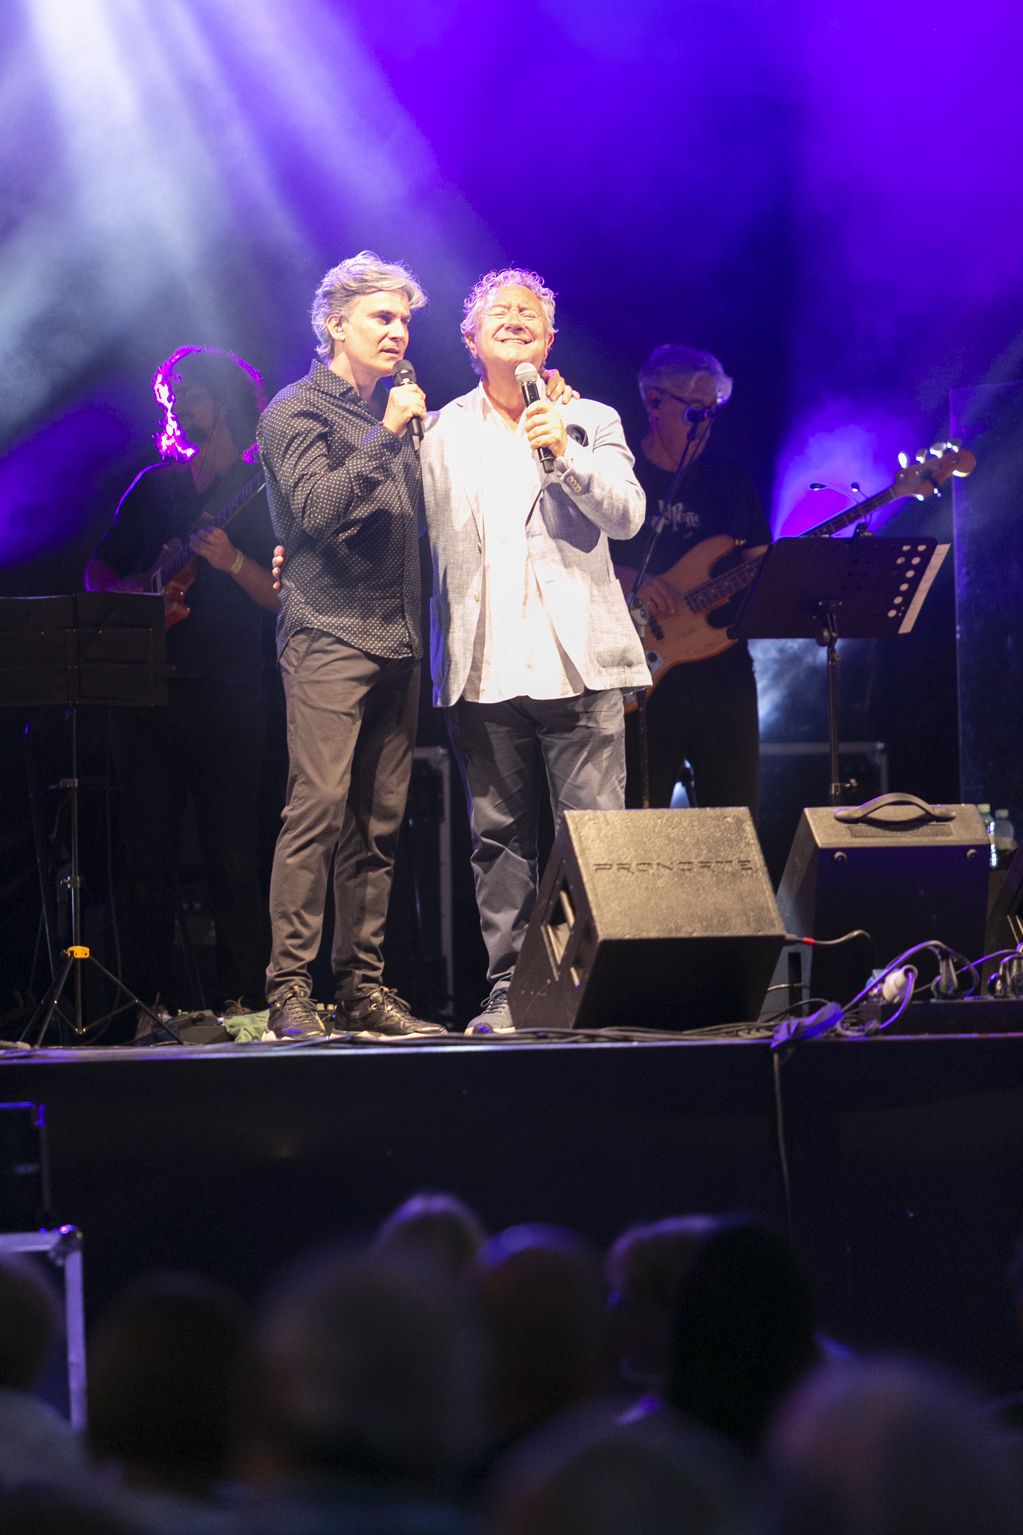 Así fue el concierto de Nando Agüeros, sus "amigos asturianos" y Rosa López en Luanco